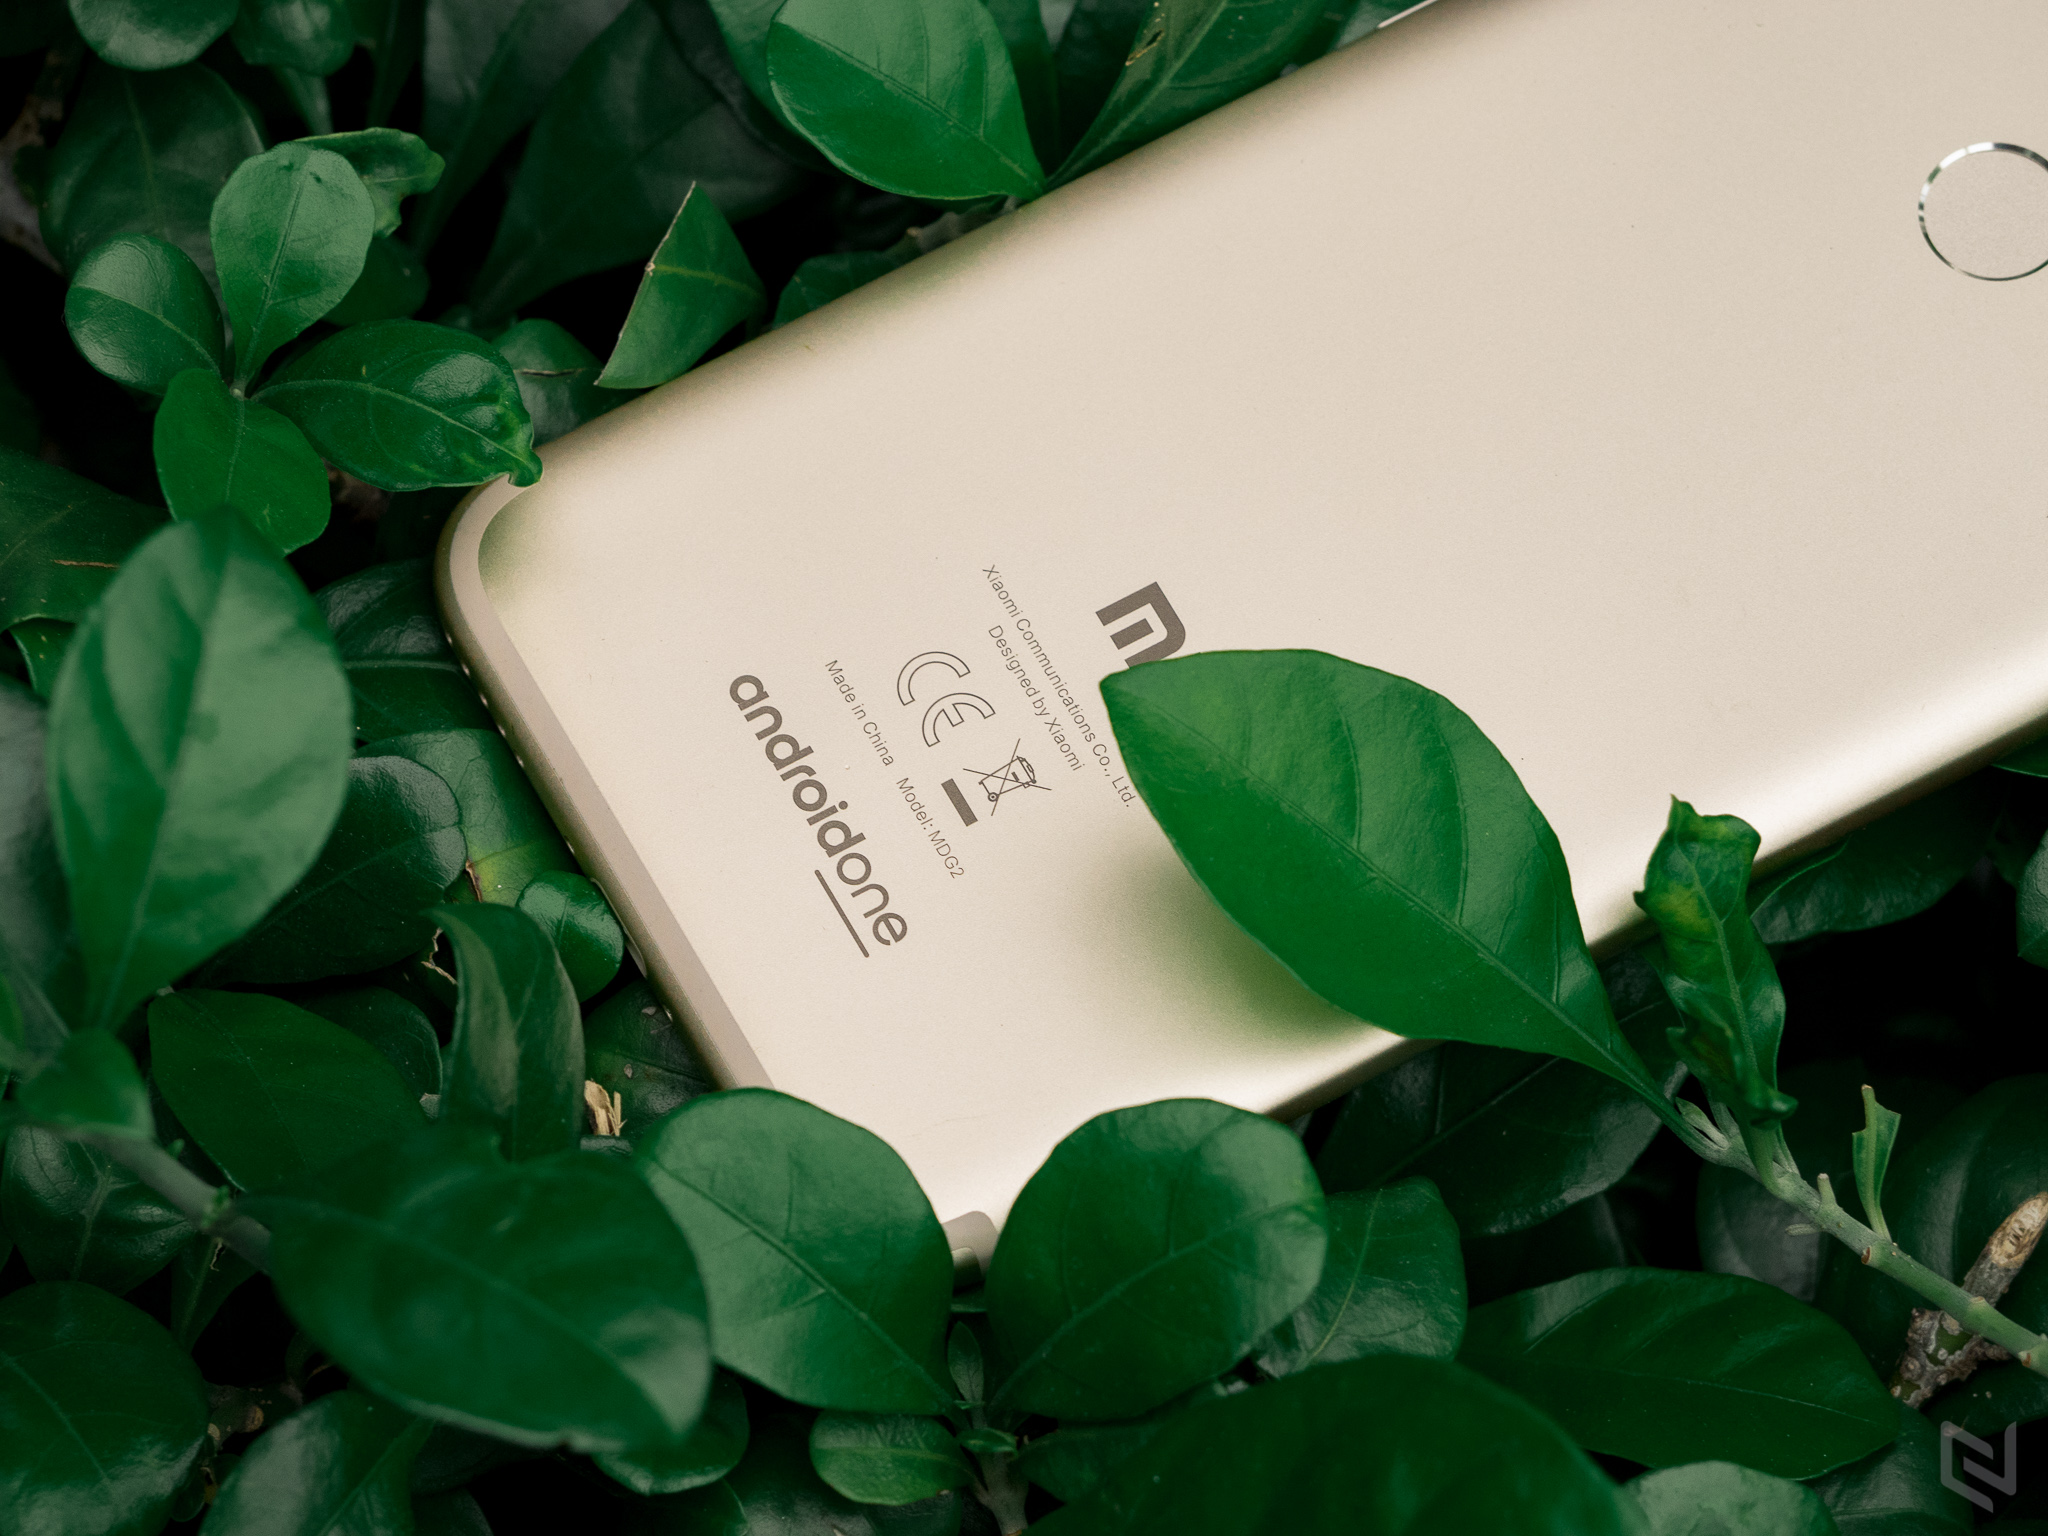 Đánh giá chi tiết Xiaomi Mi A1: Sức hút đến từ bên trong